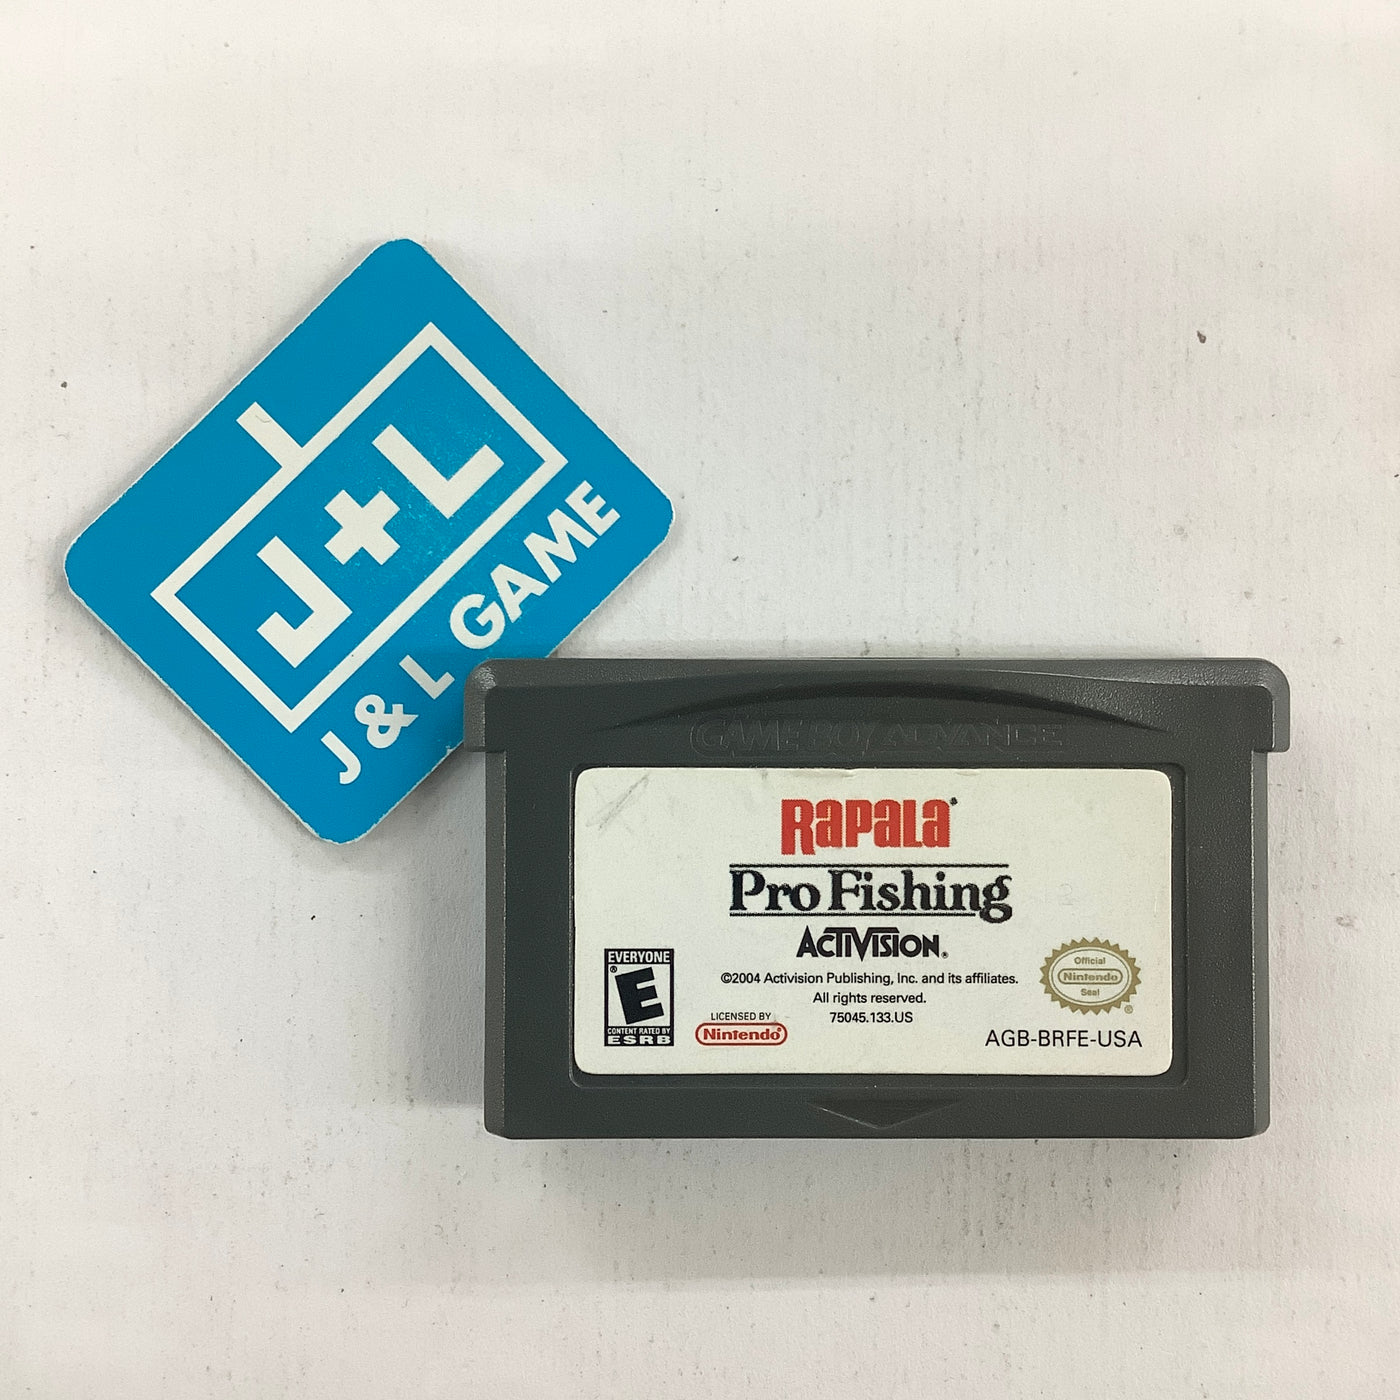 Nintendo Gameboy Advance GBA Rapala Pro Fishing